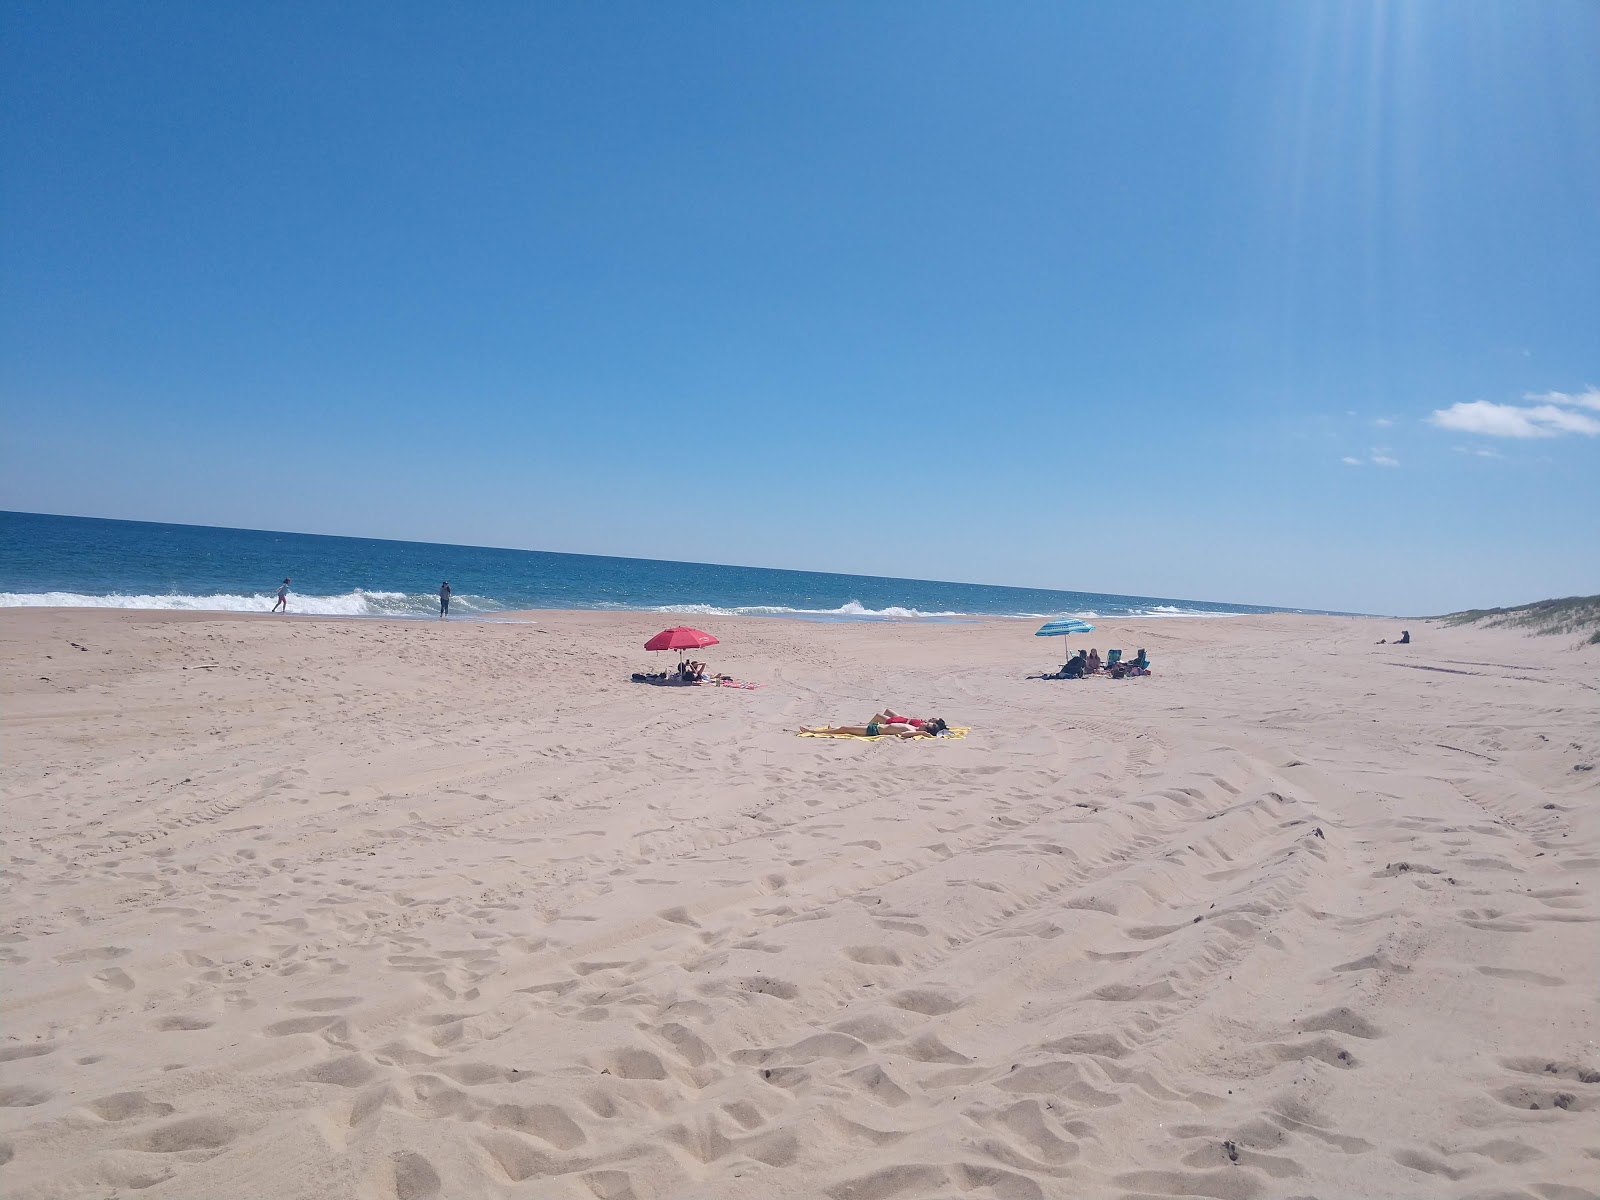 Napeague Ocean Beach'in fotoğrafı geniş plaj ile birlikte